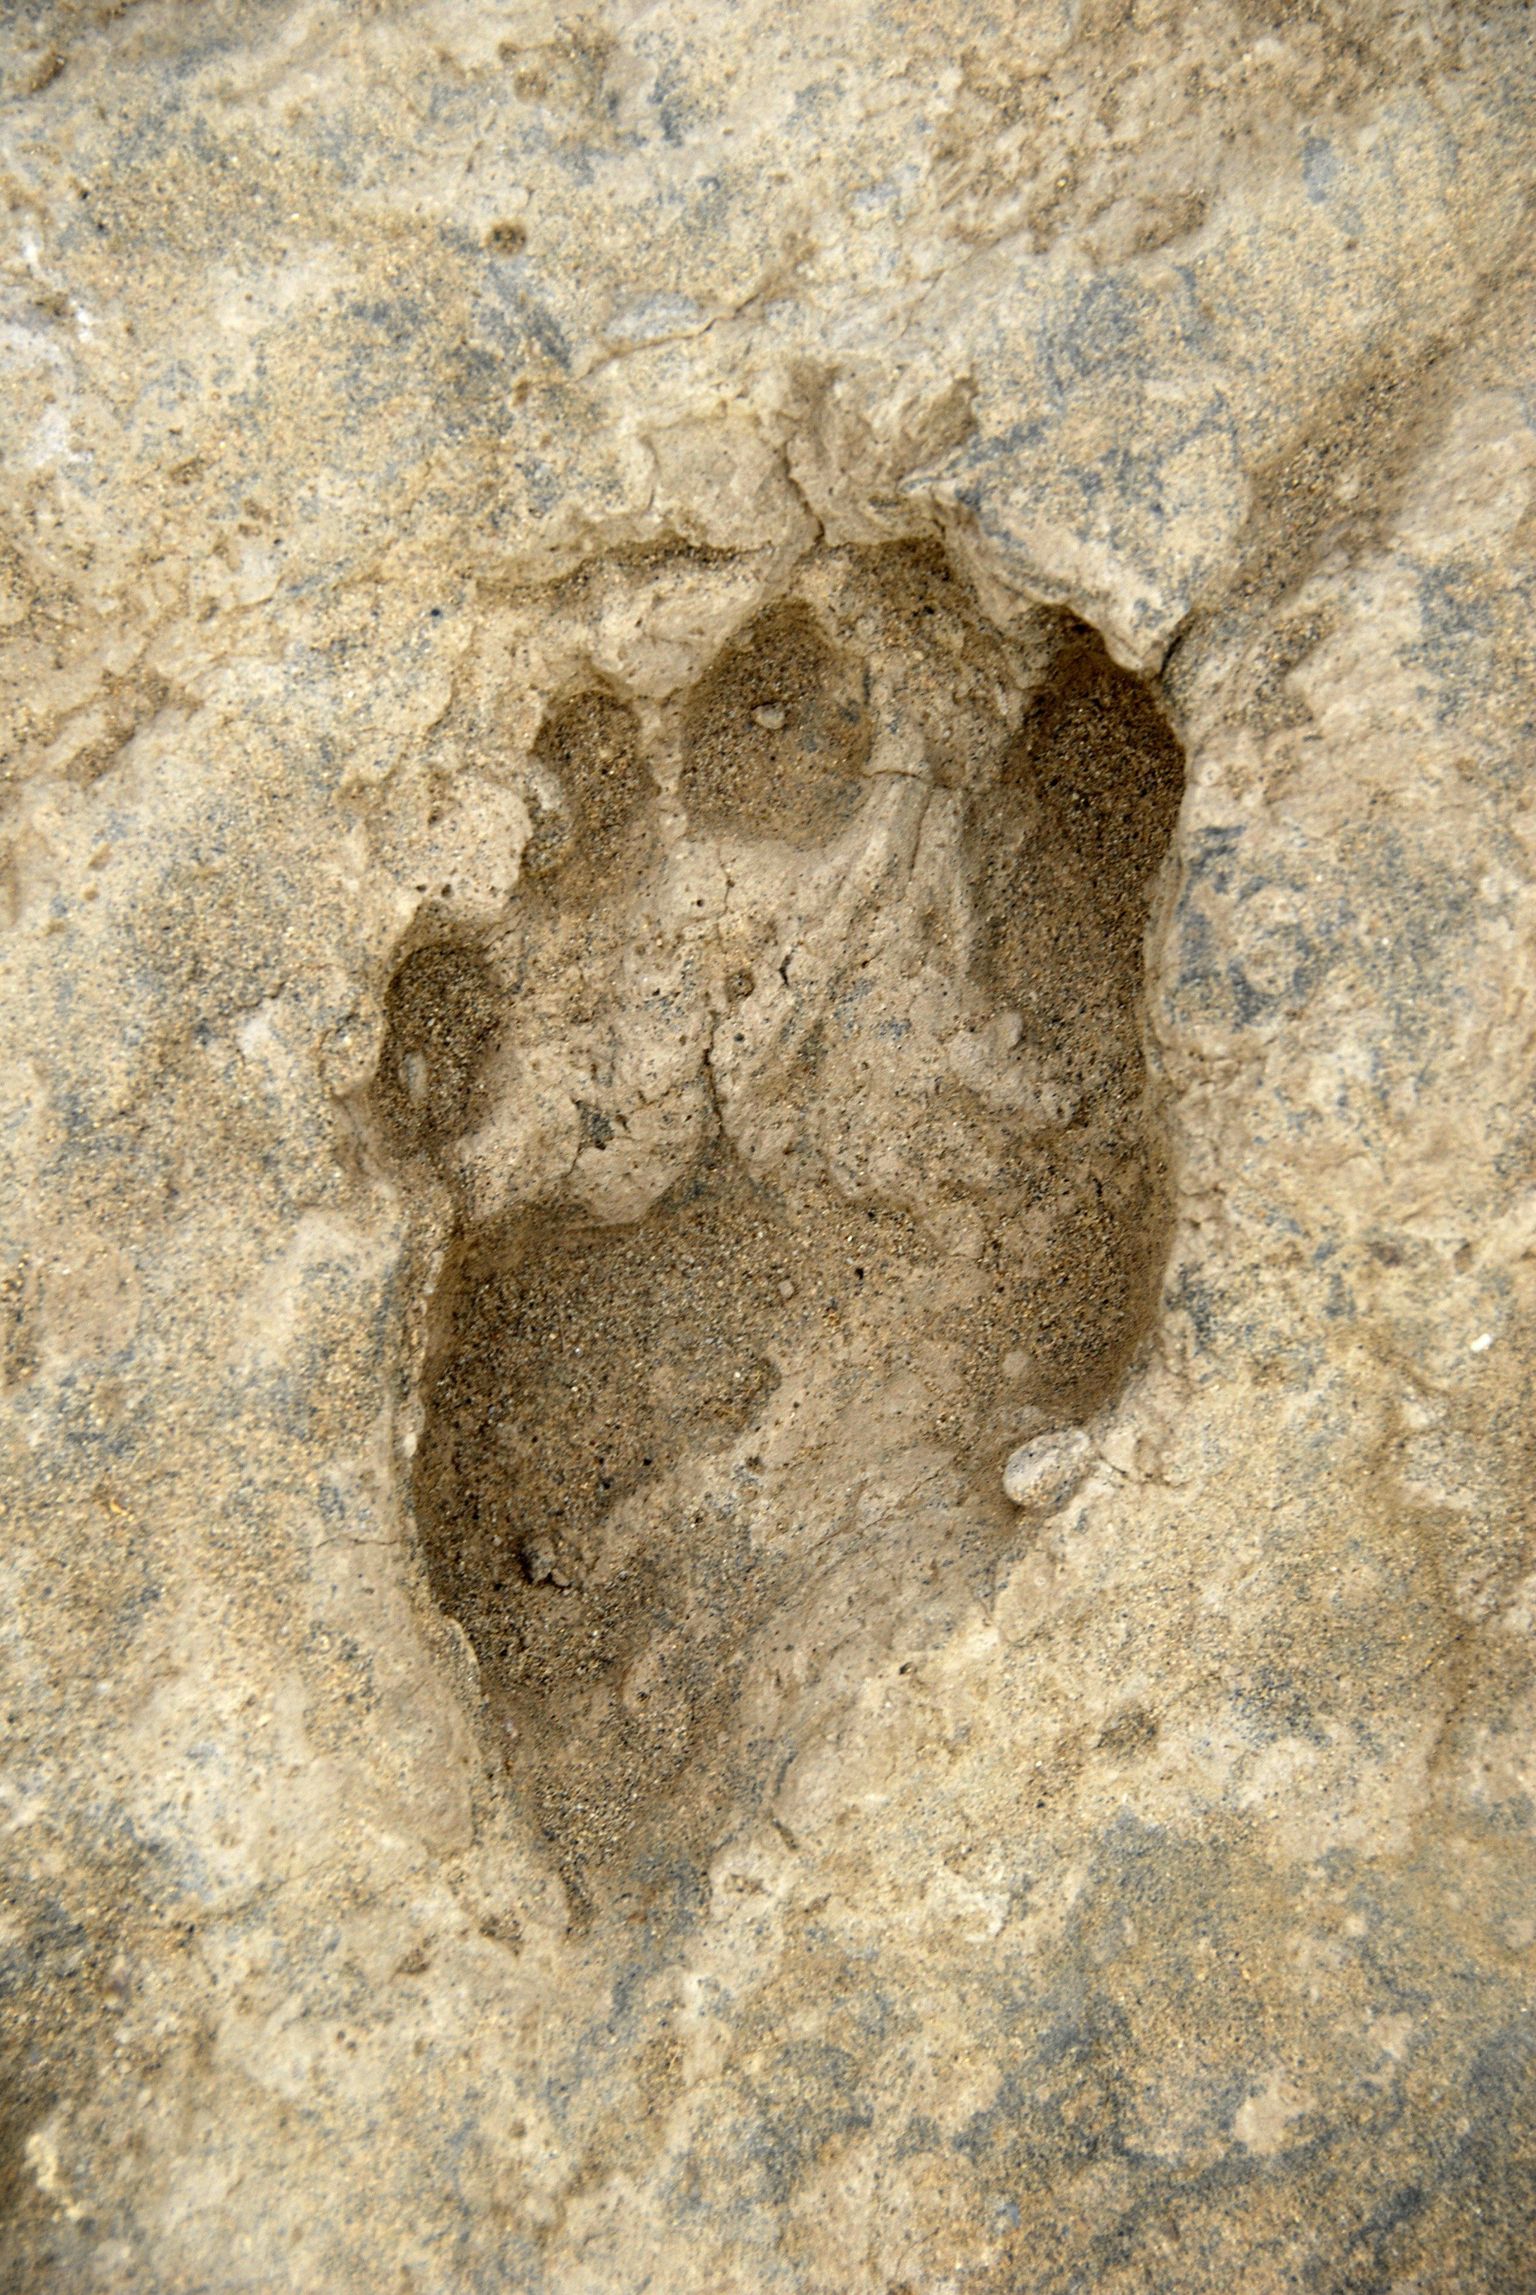 Keeniast leitud fossiilne jalajälg.